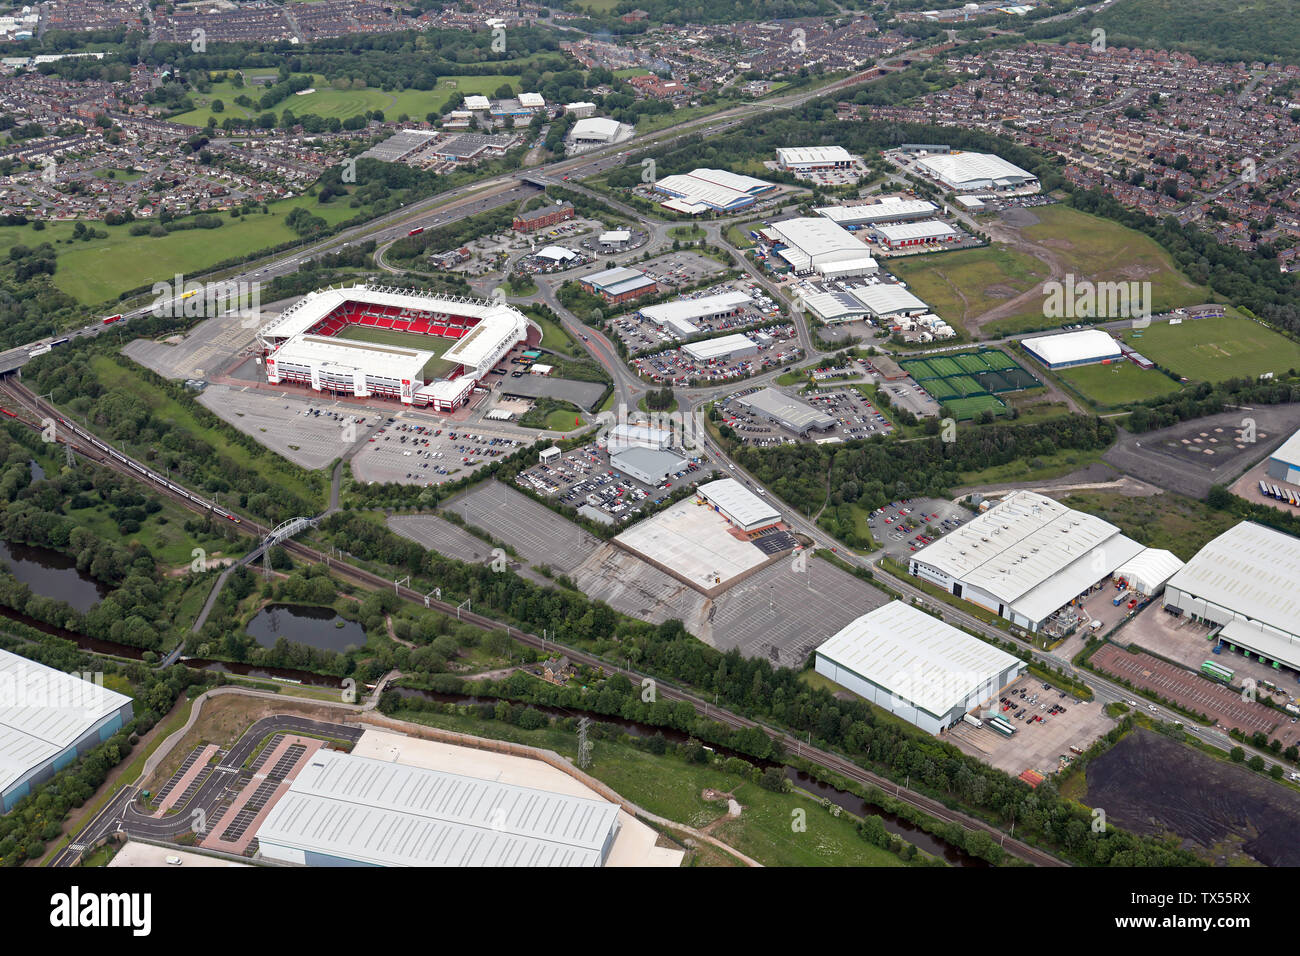 Vue aérienne de Stoke montrant la route A50, Bet 365 Stade de football et de diverses unités d'industriels et d'affaires, Staffordshire, Royaume-Uni Banque D'Images